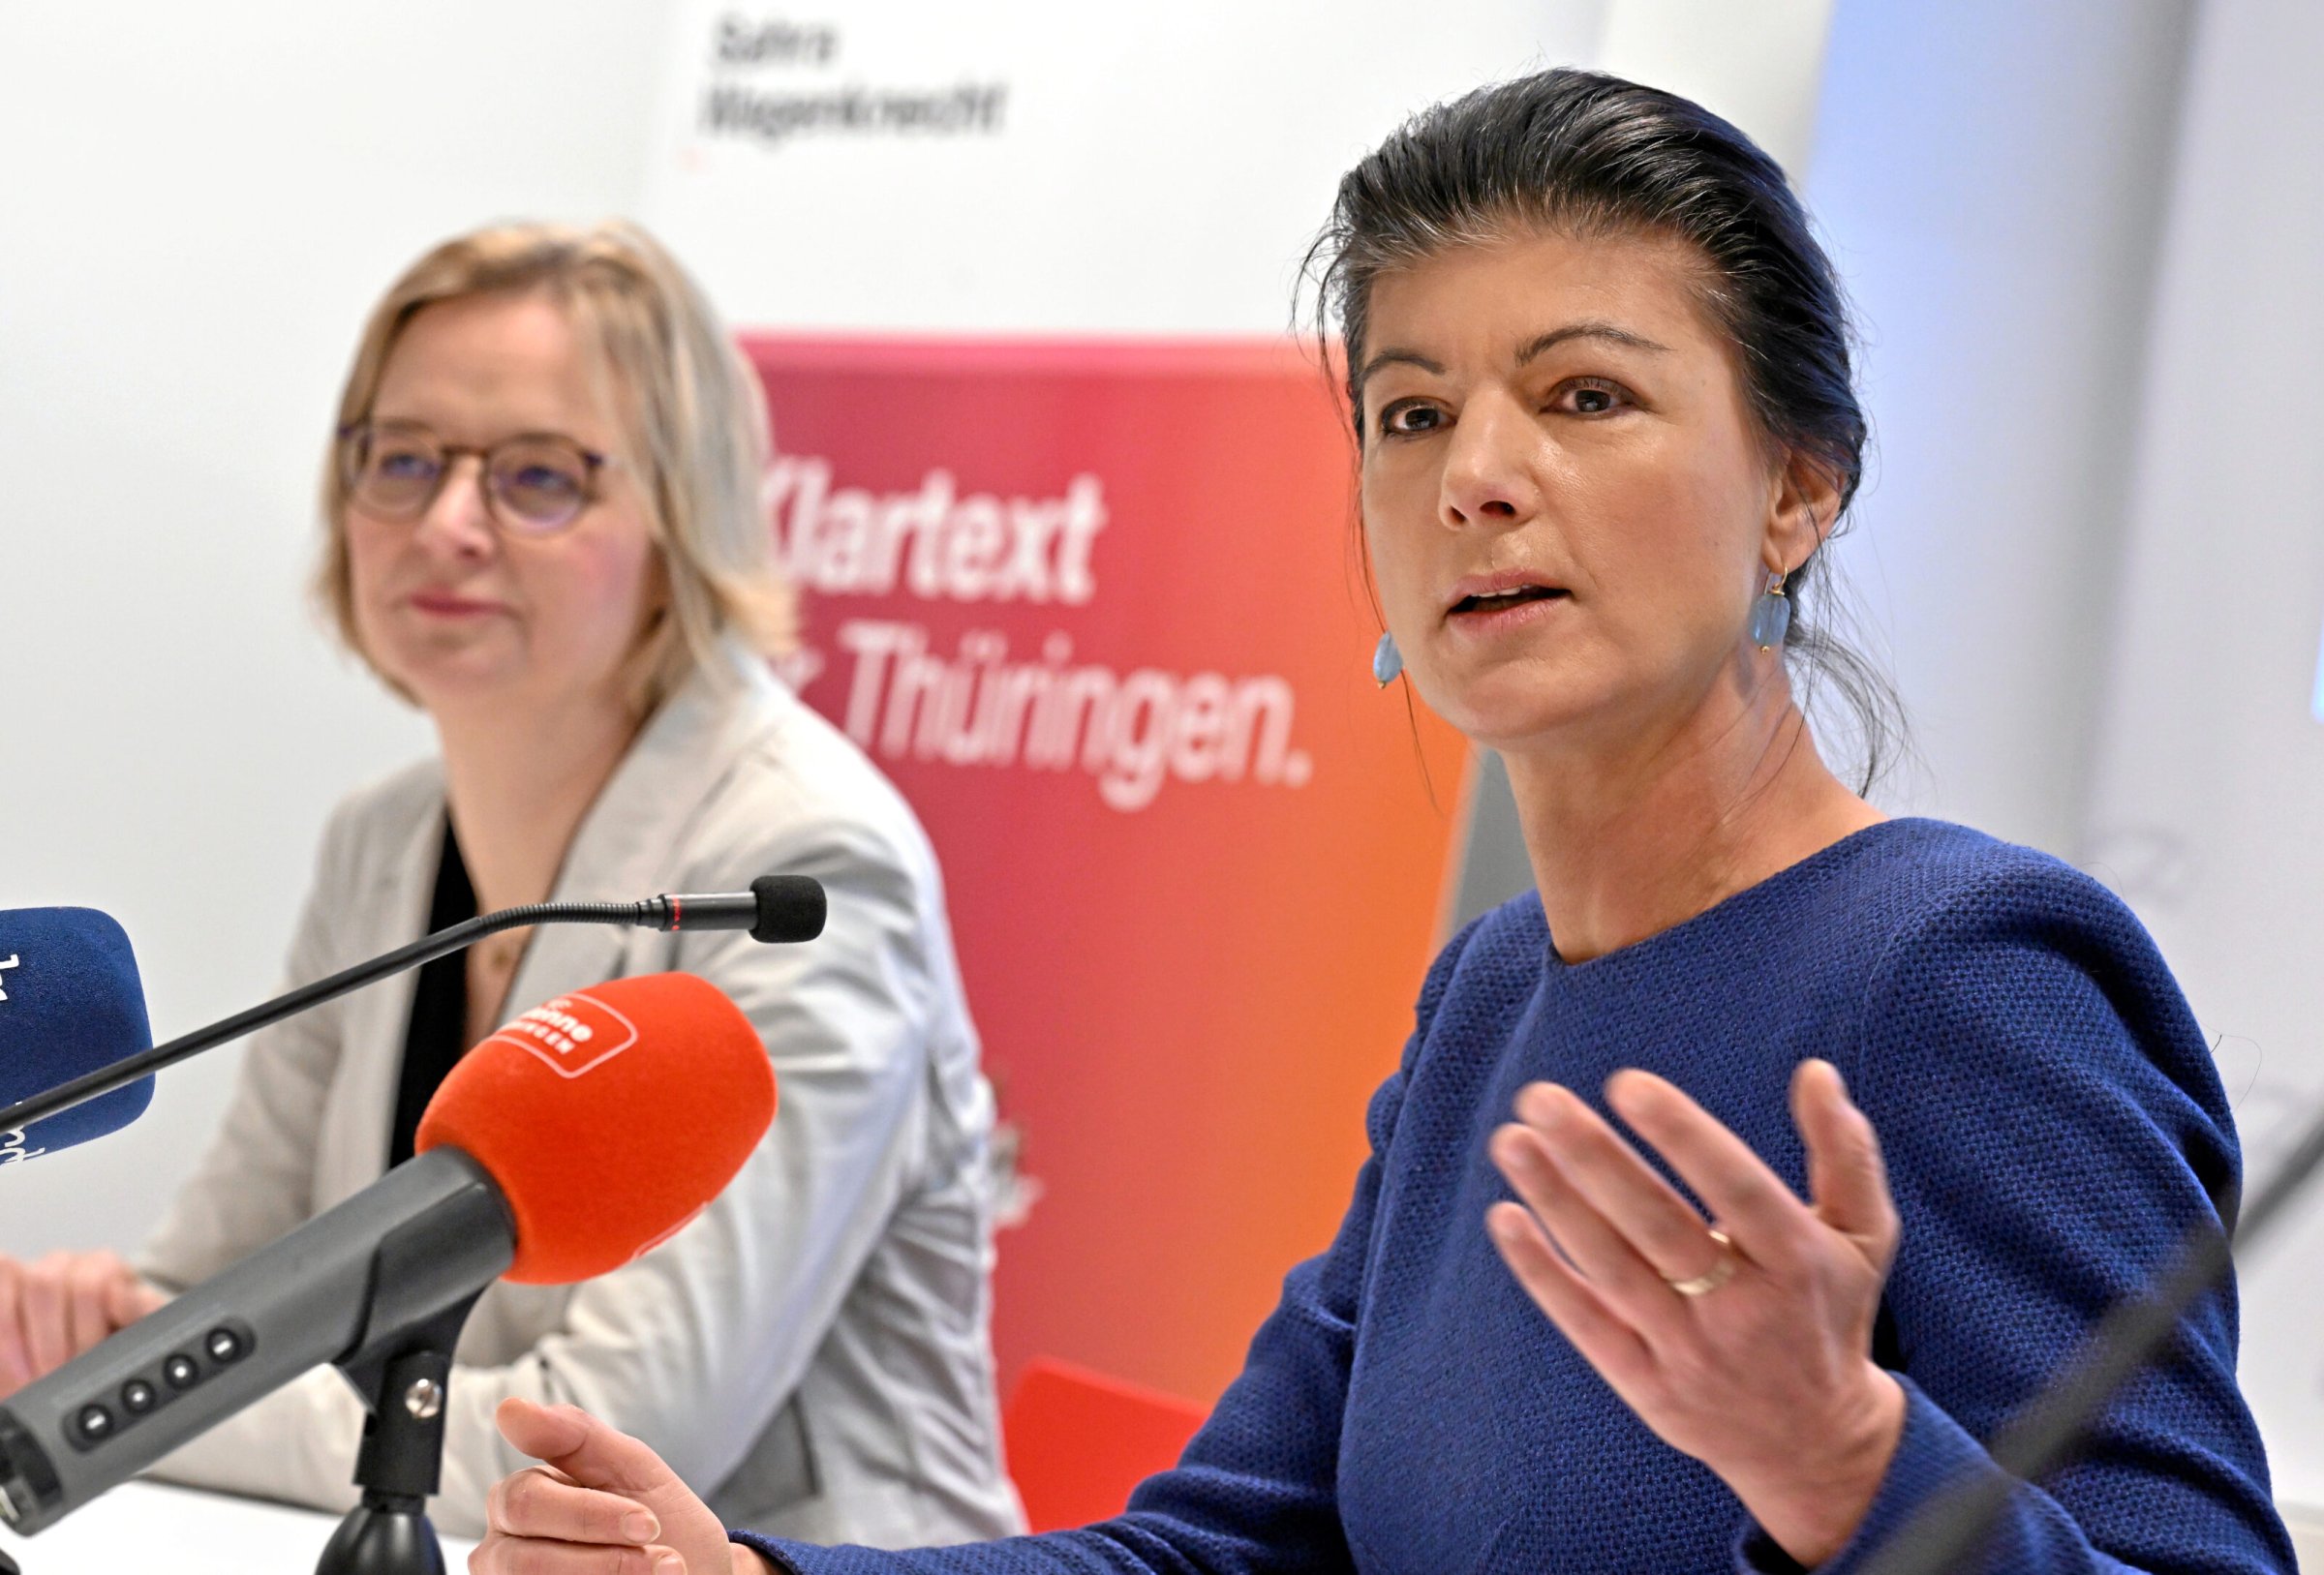 Alliance Sahra Wagenknecht : BSW : Déjà des candidatures pour les élections locales